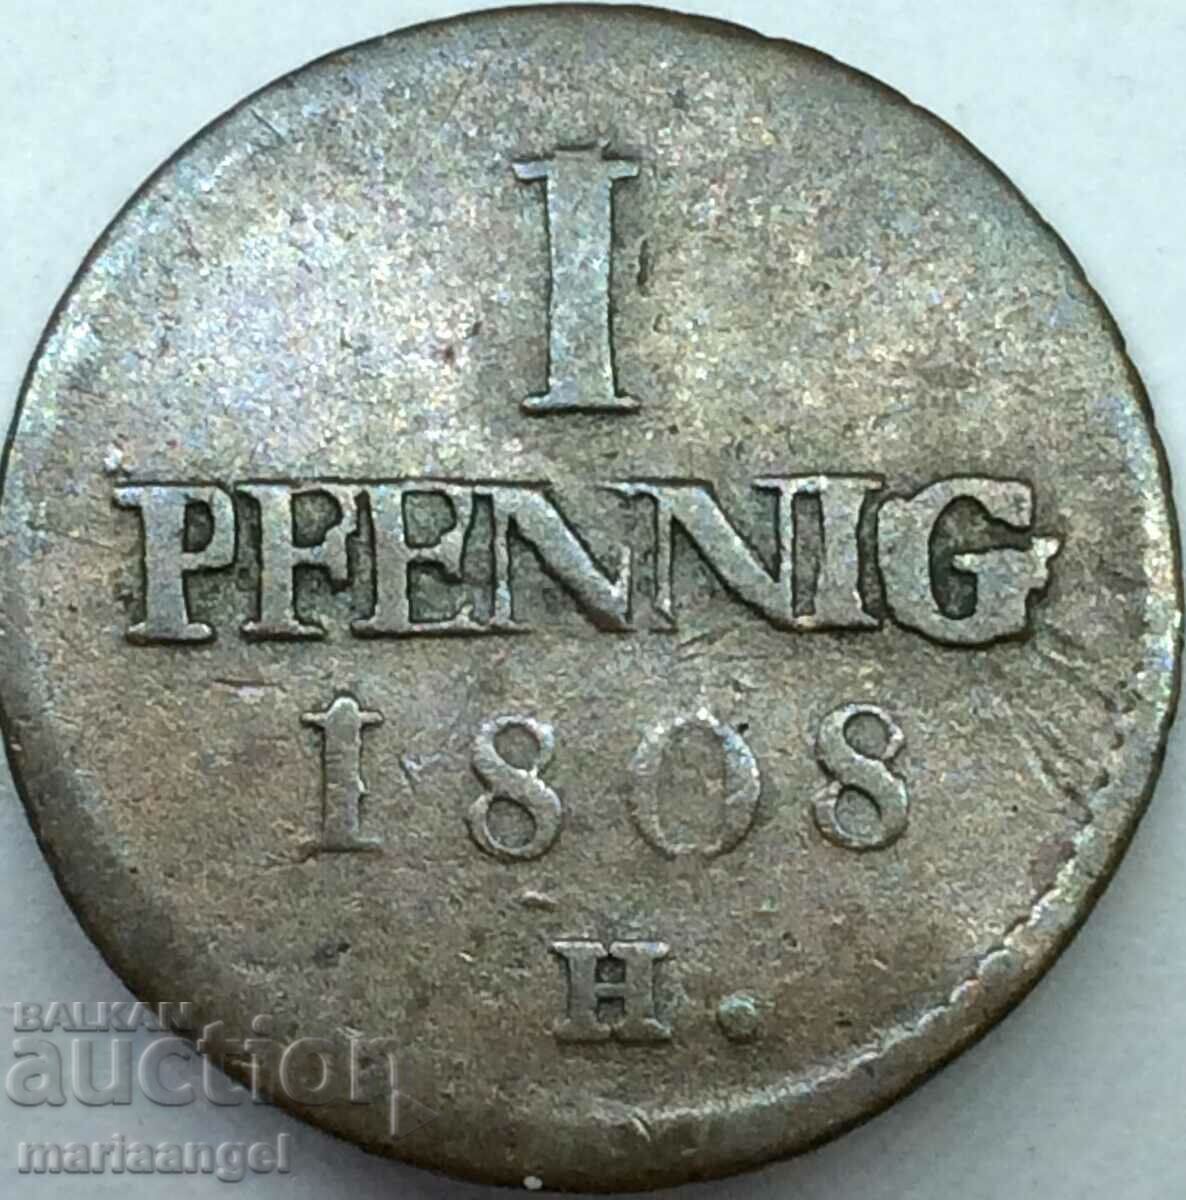 Saxony 1 pfennig 1808 N Germany - rare